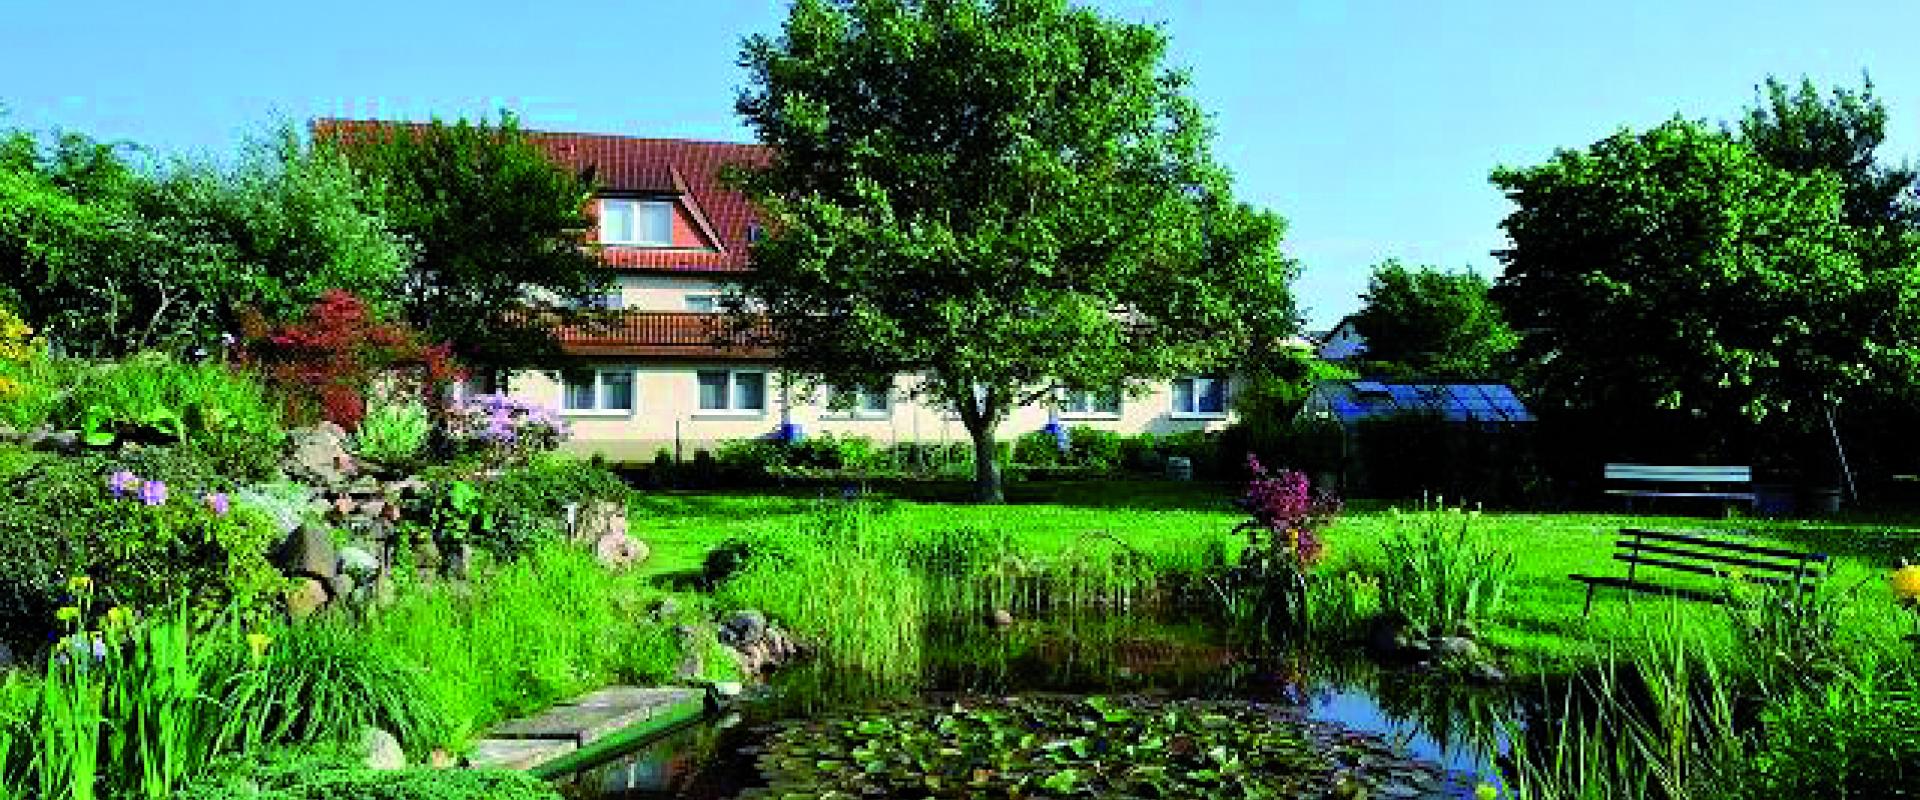 12260 Biker Hotel zum Rethberg in Mecklenburg-Vorpommern.jpg